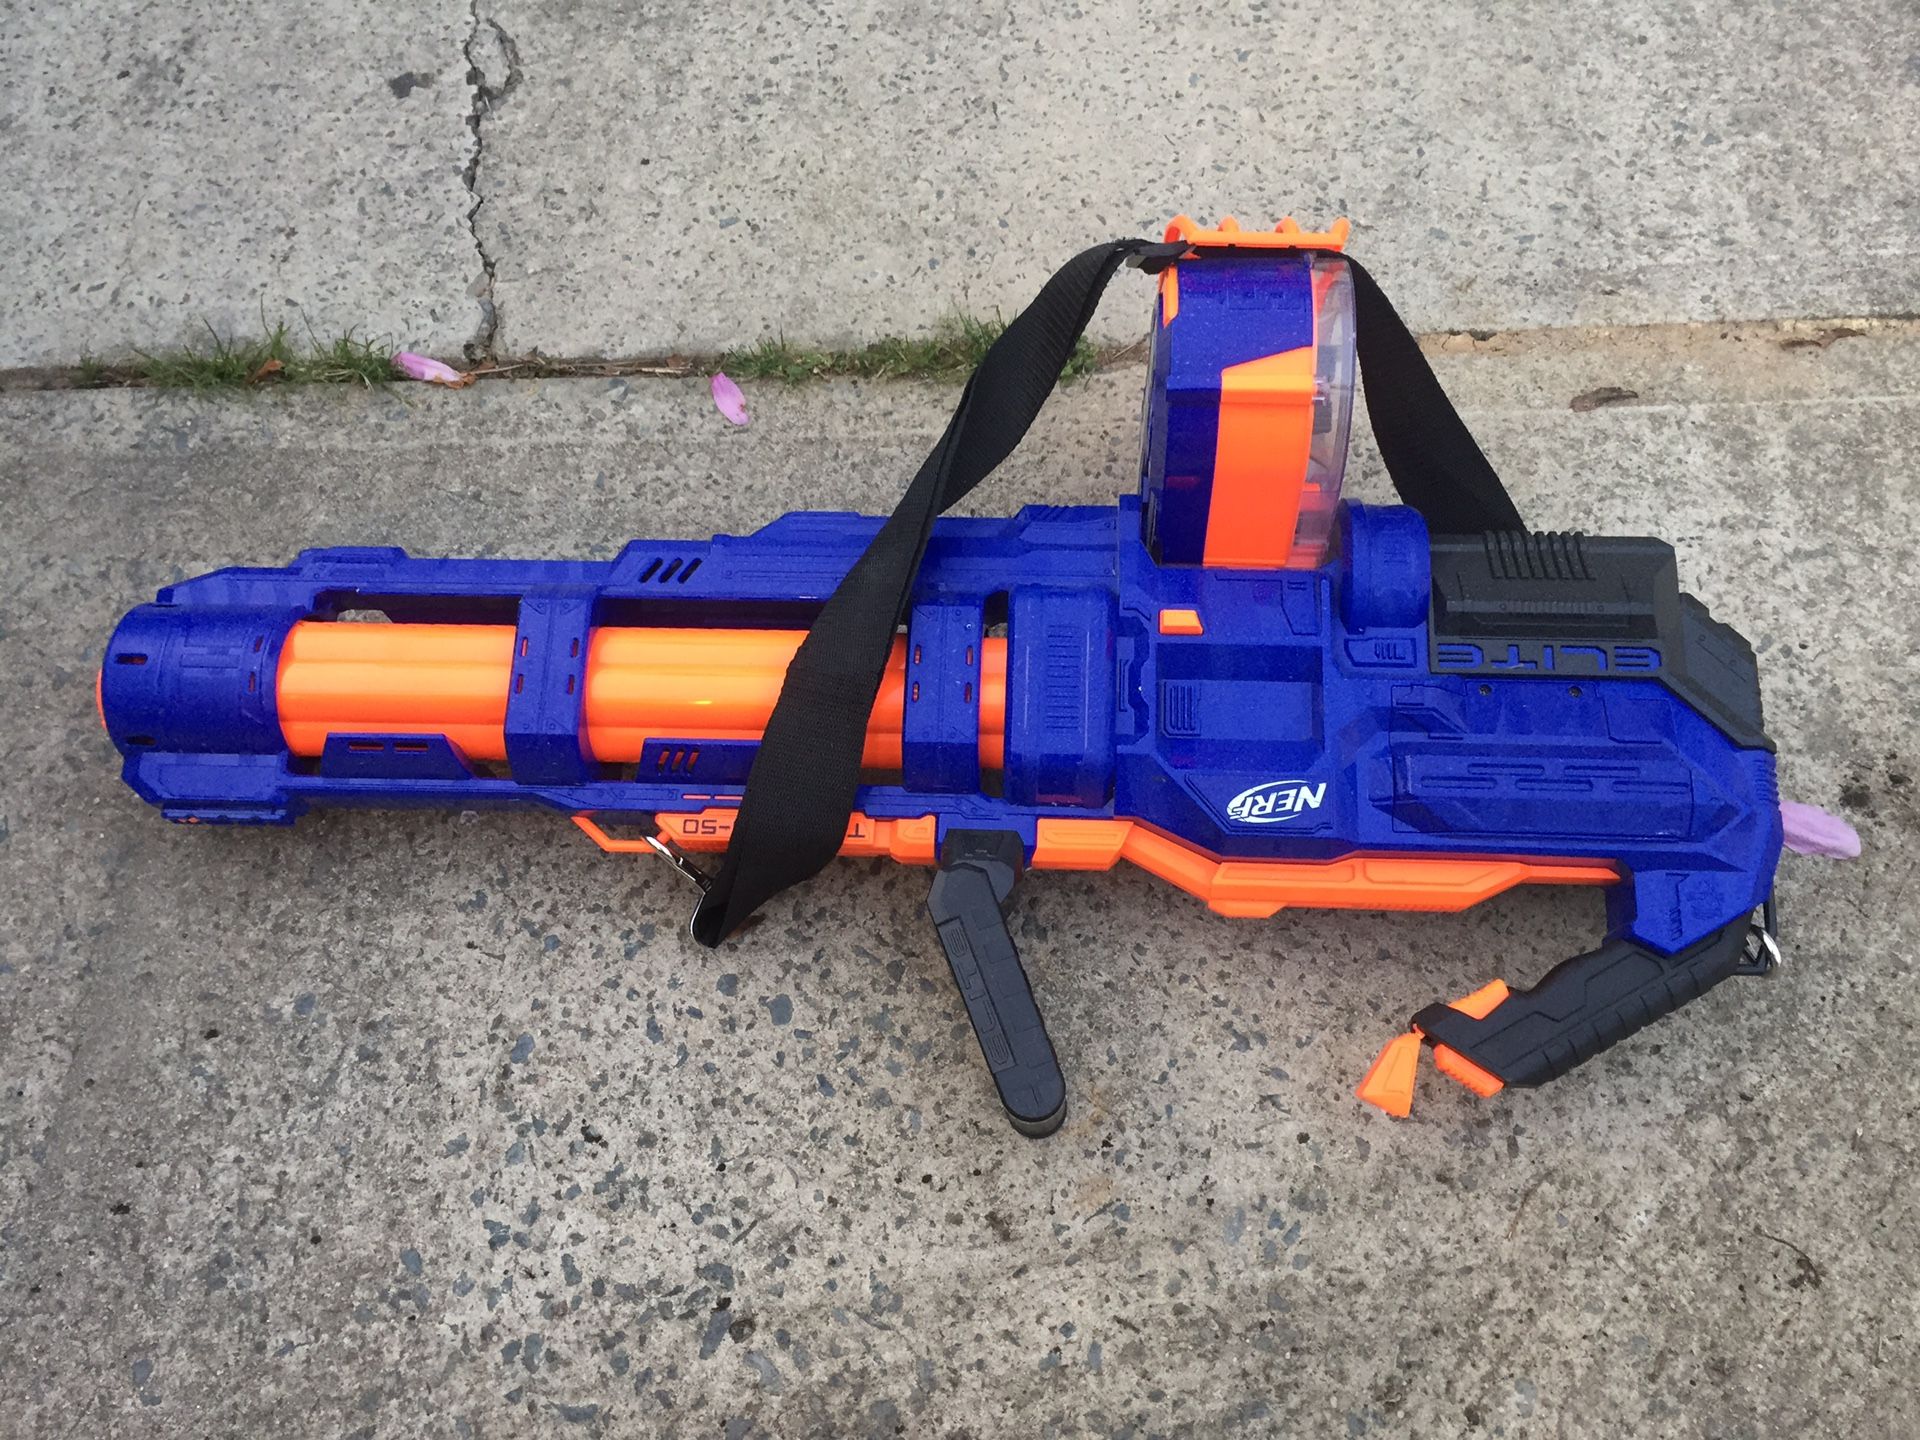 Nerf gun $20